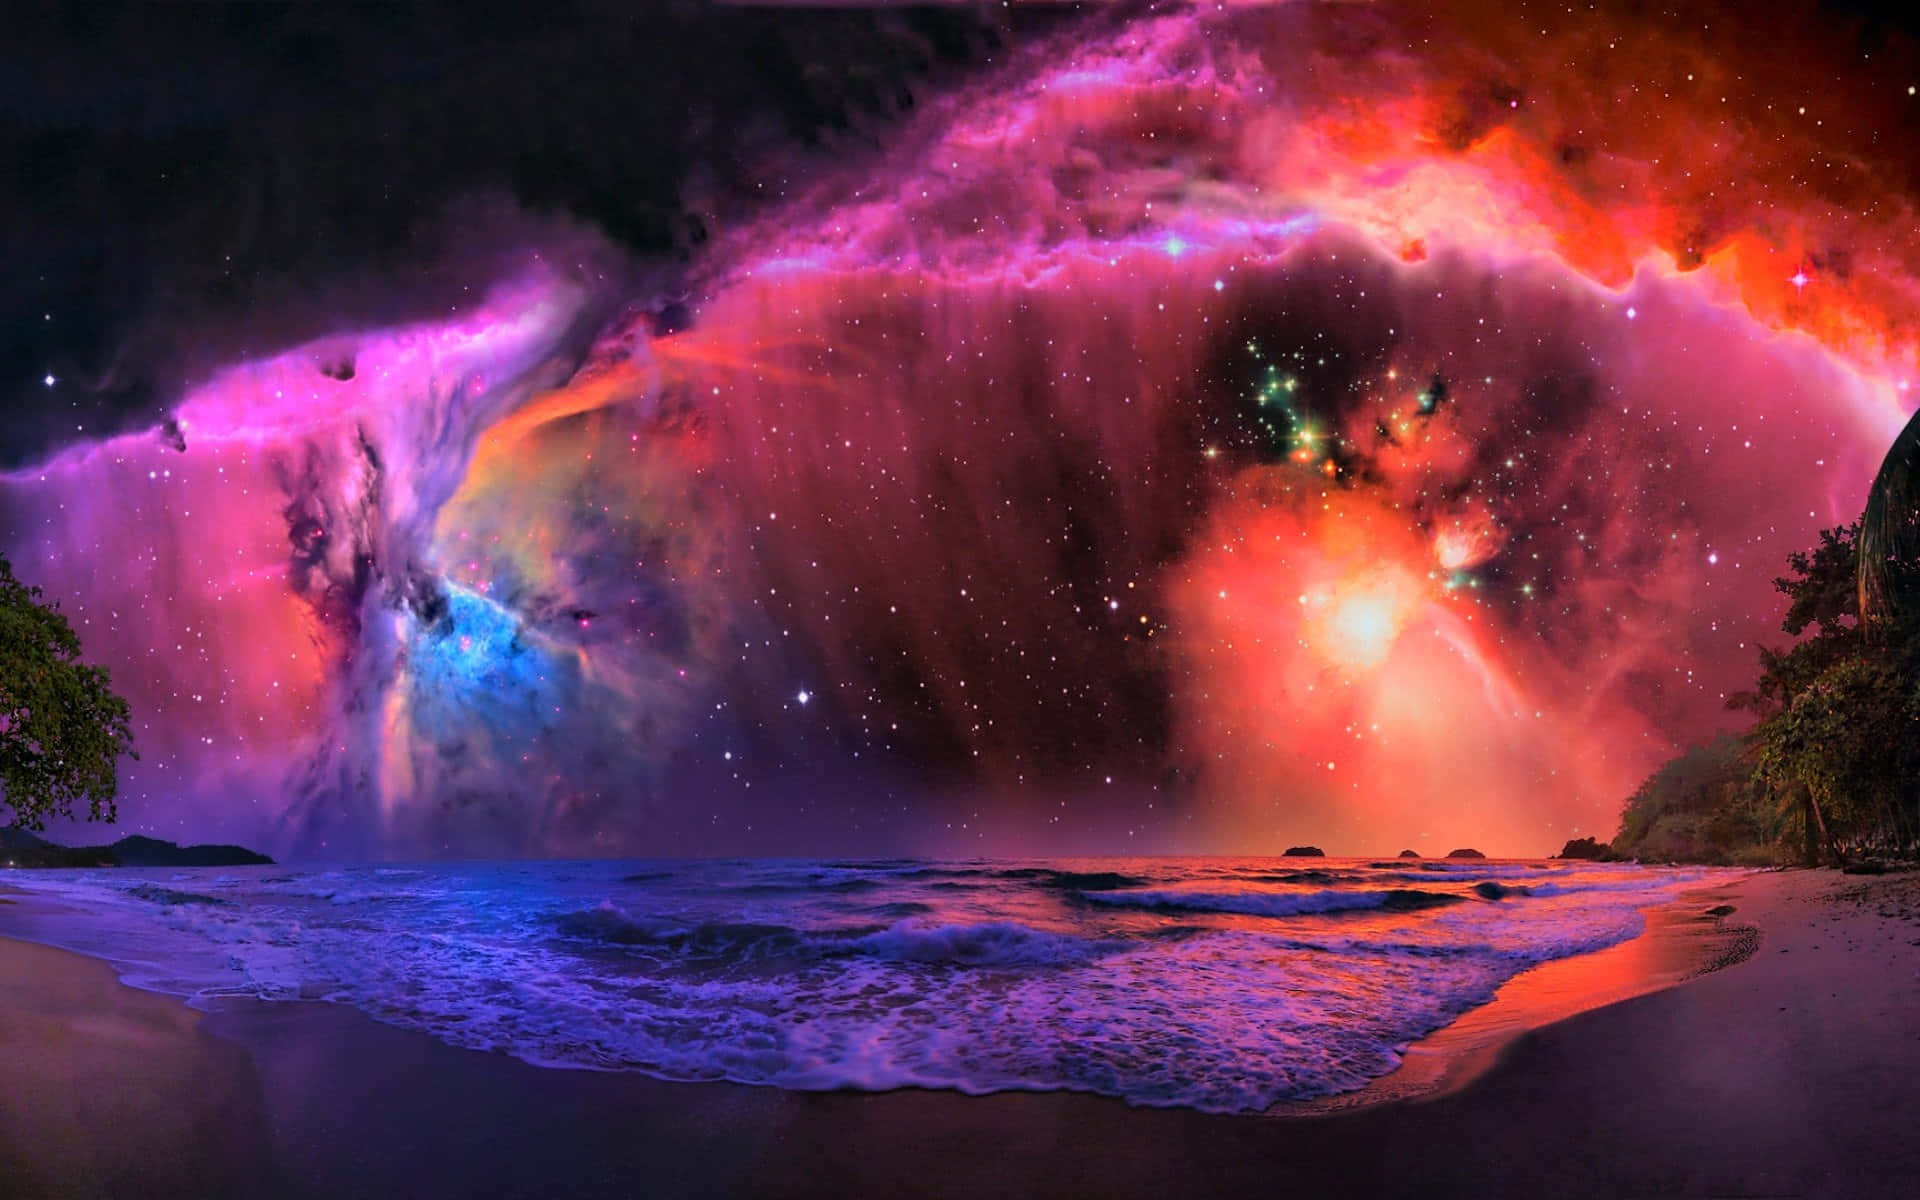 Hochauflösendeshintergrundbild Von Einer Strandlandschaft Im Galaxy-stil.